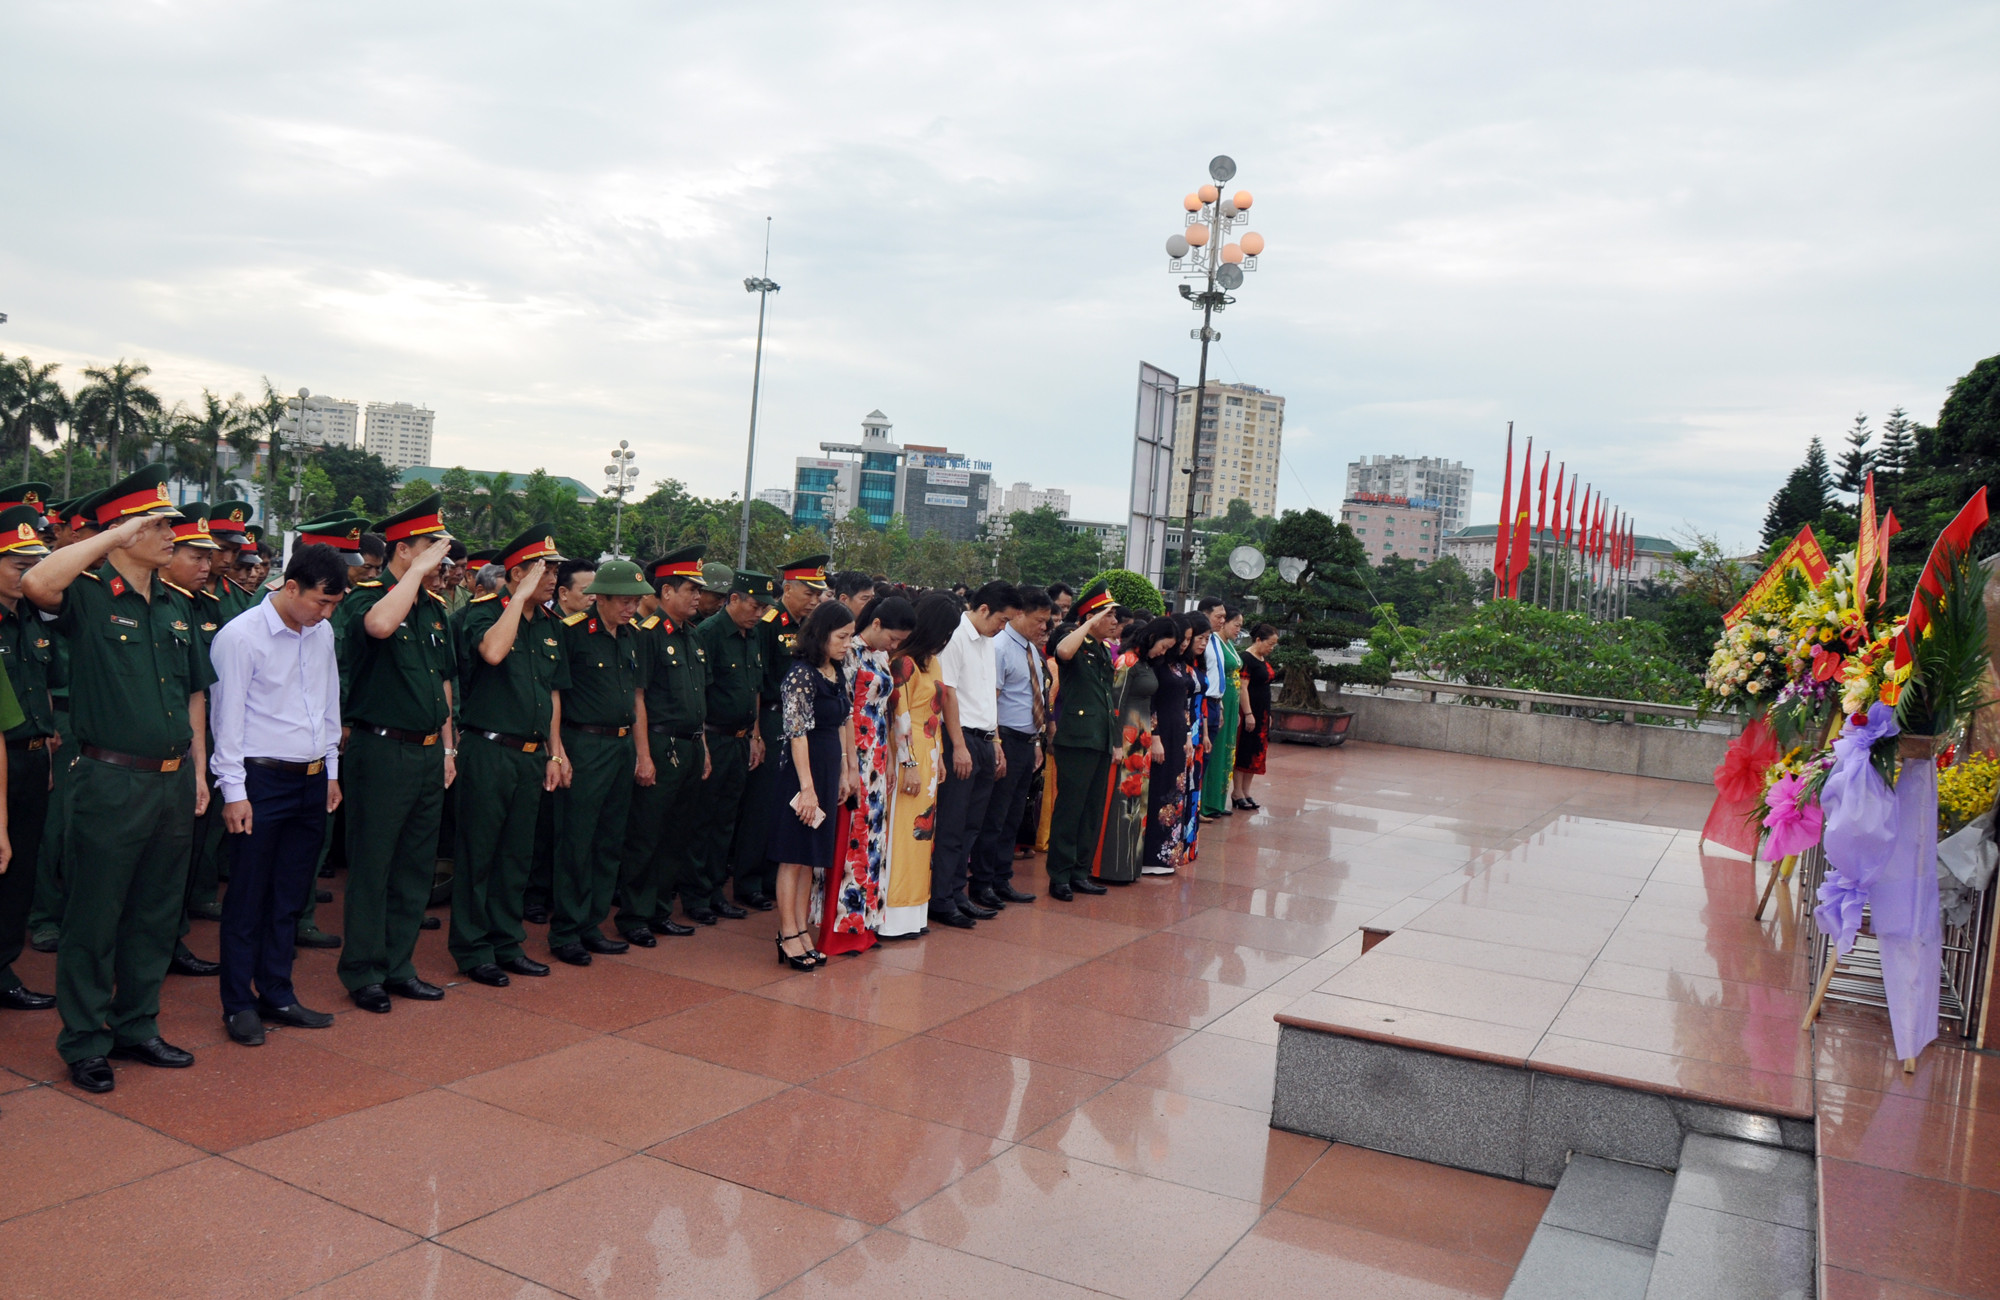 Trước giờ khai mạc, các đại biểu tiến hành dâng hoa, tưởng niệm trước Tượng đài Bác Hồ tại Quảng trường Hồ Chí Minh. Ảnh: Công Khang